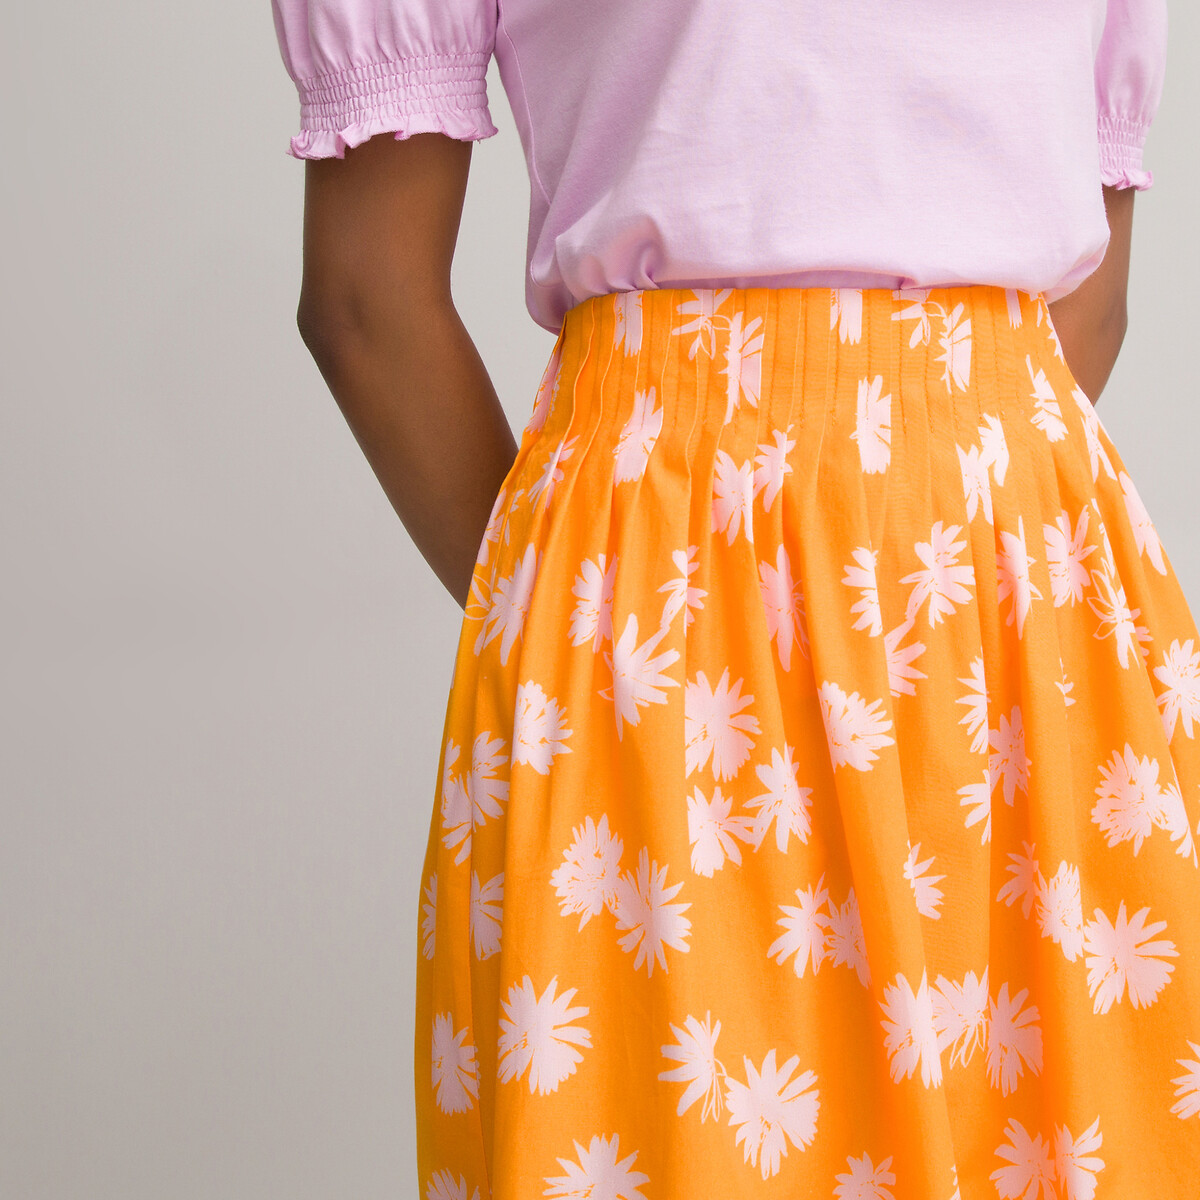 imprimé floral Jupe courte évasée La Redoute Femme Vêtements Jupes Jupes imprimées 